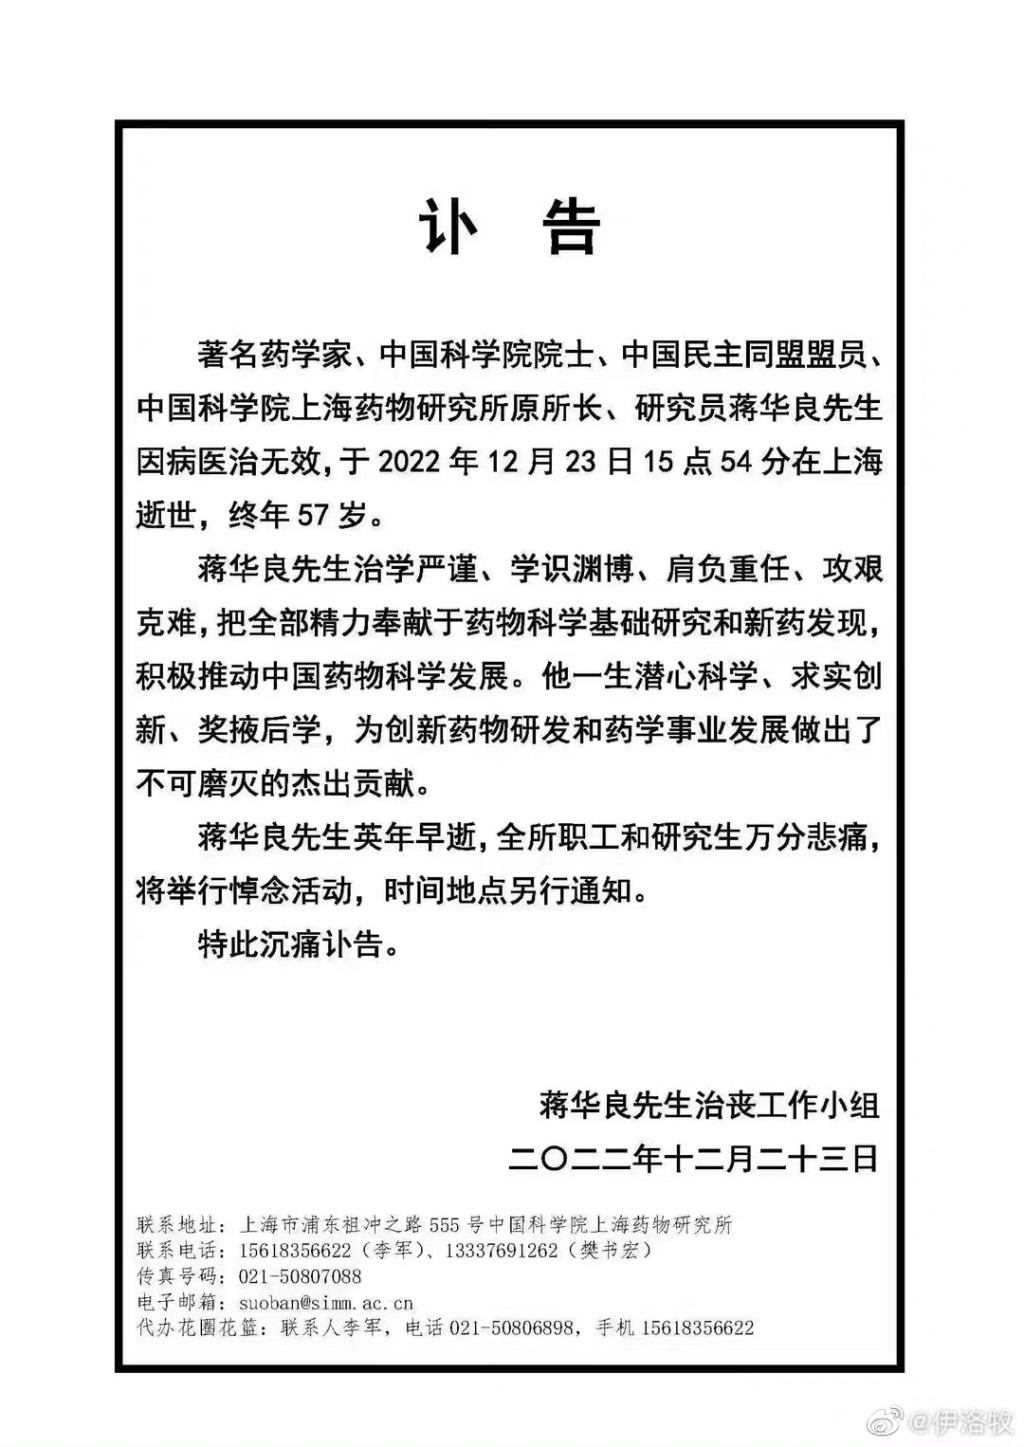 中科院上海药物所微信公众号发布讣告。